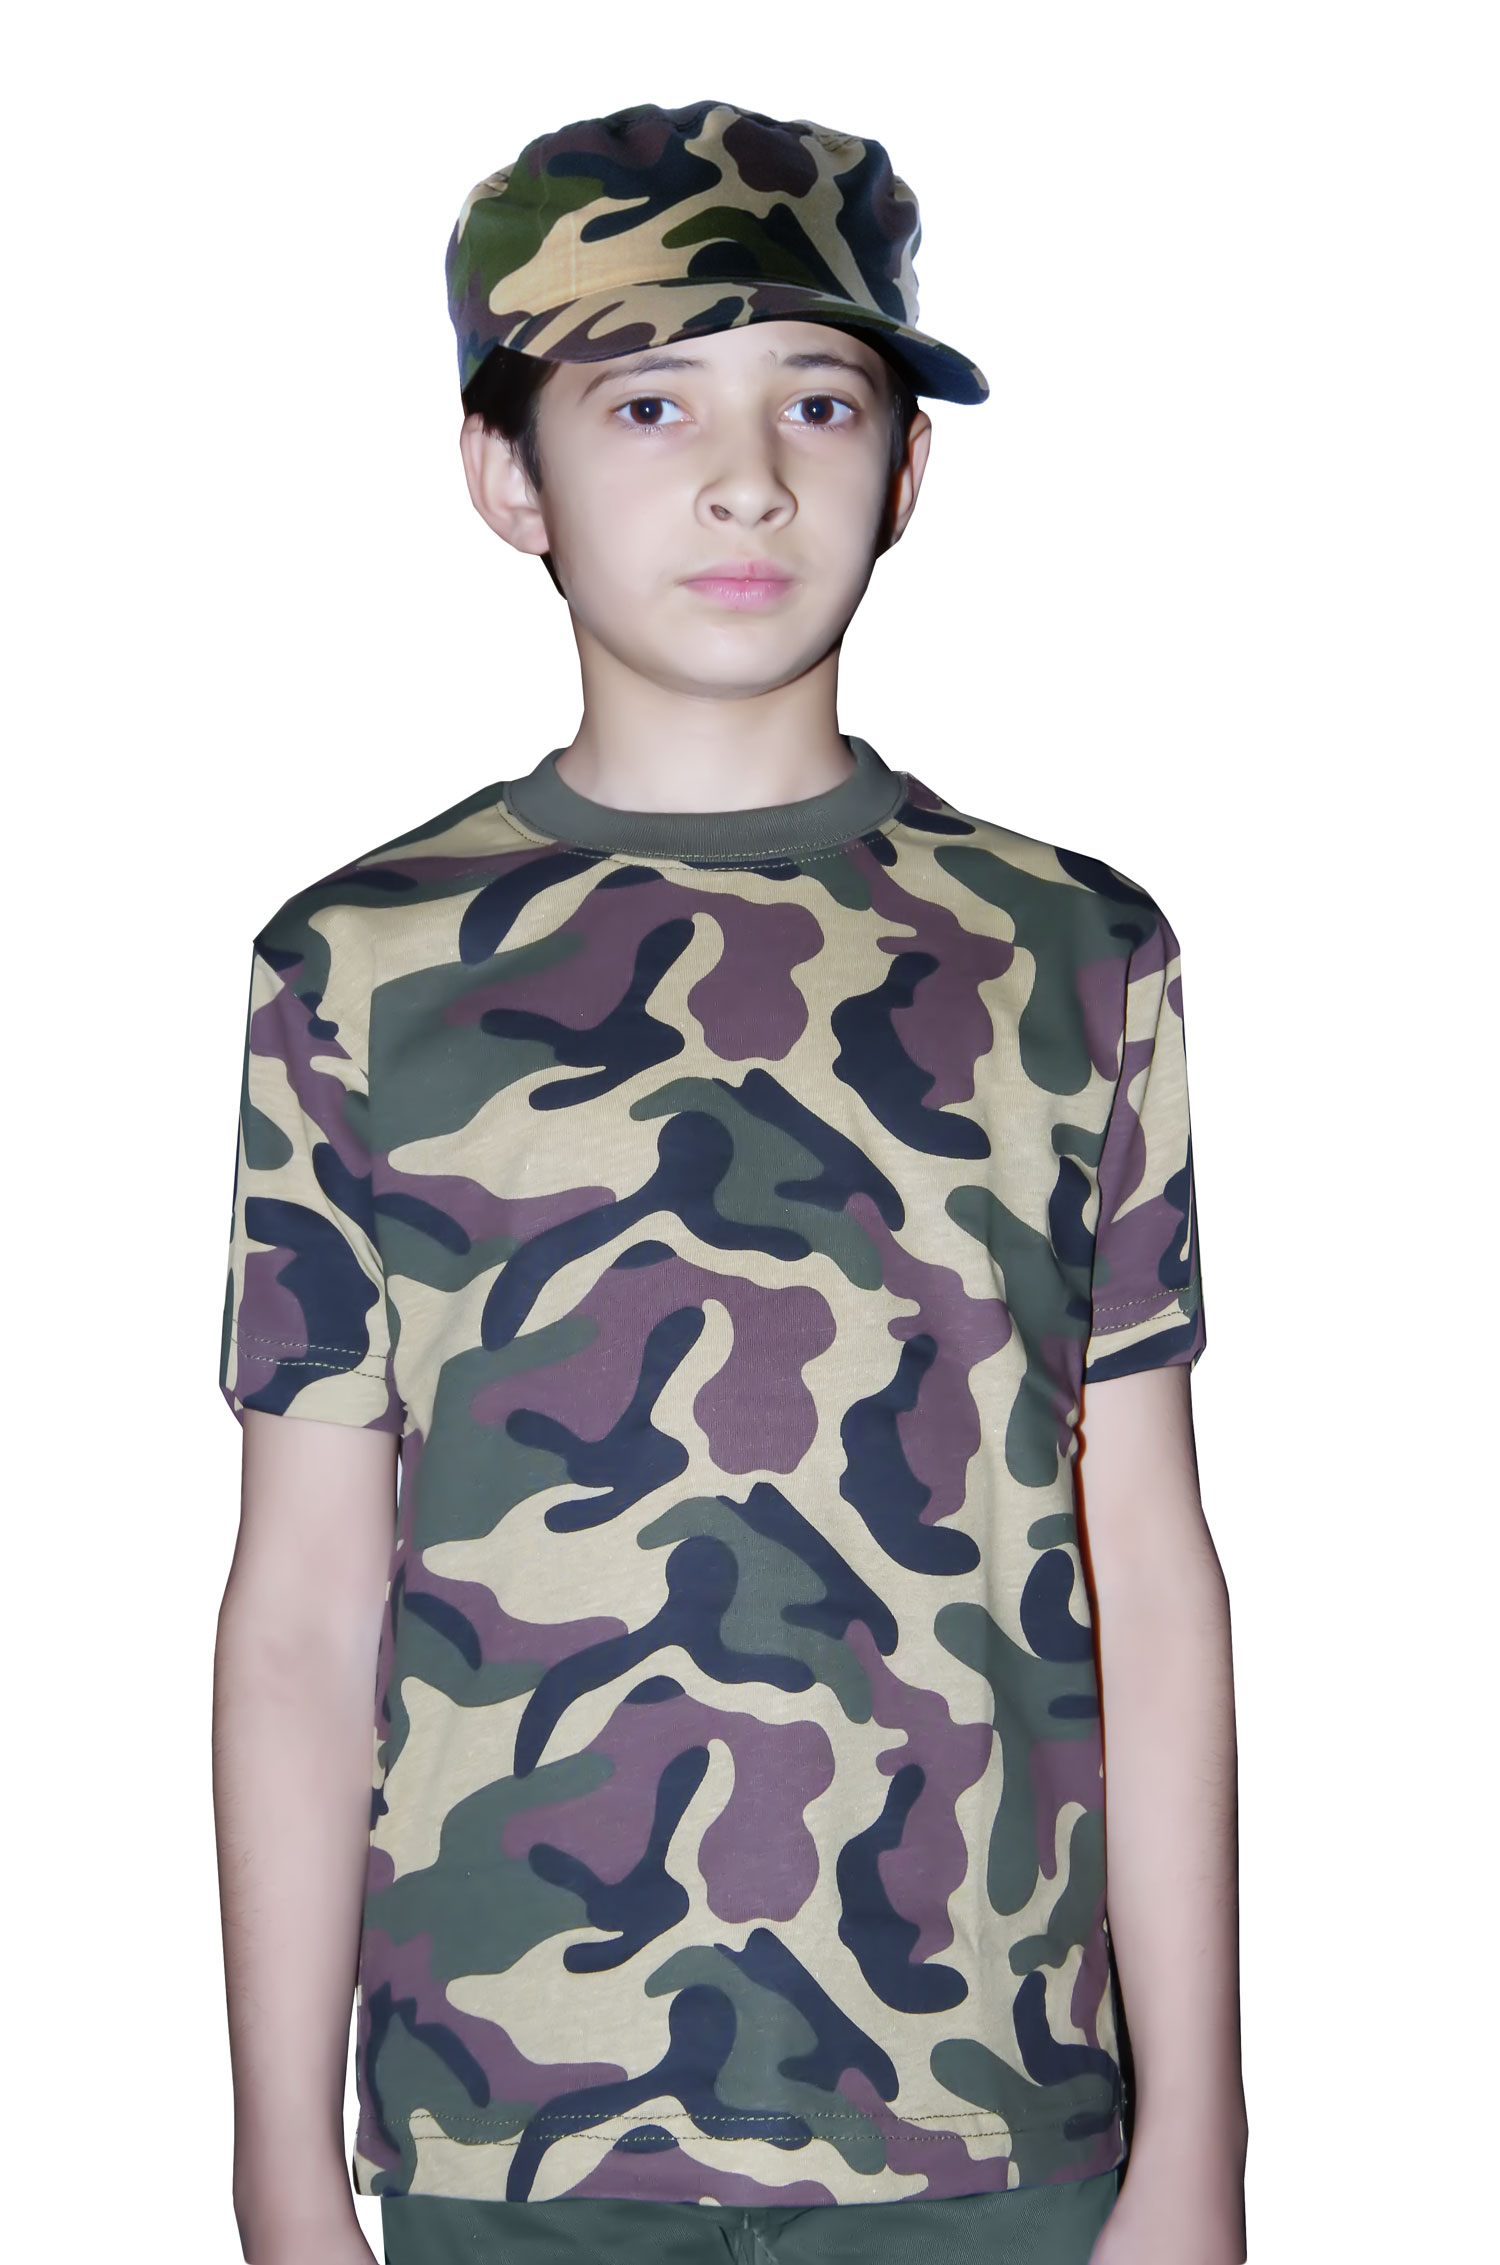 Wickedfun Children's Army T-Shirt Camouflage